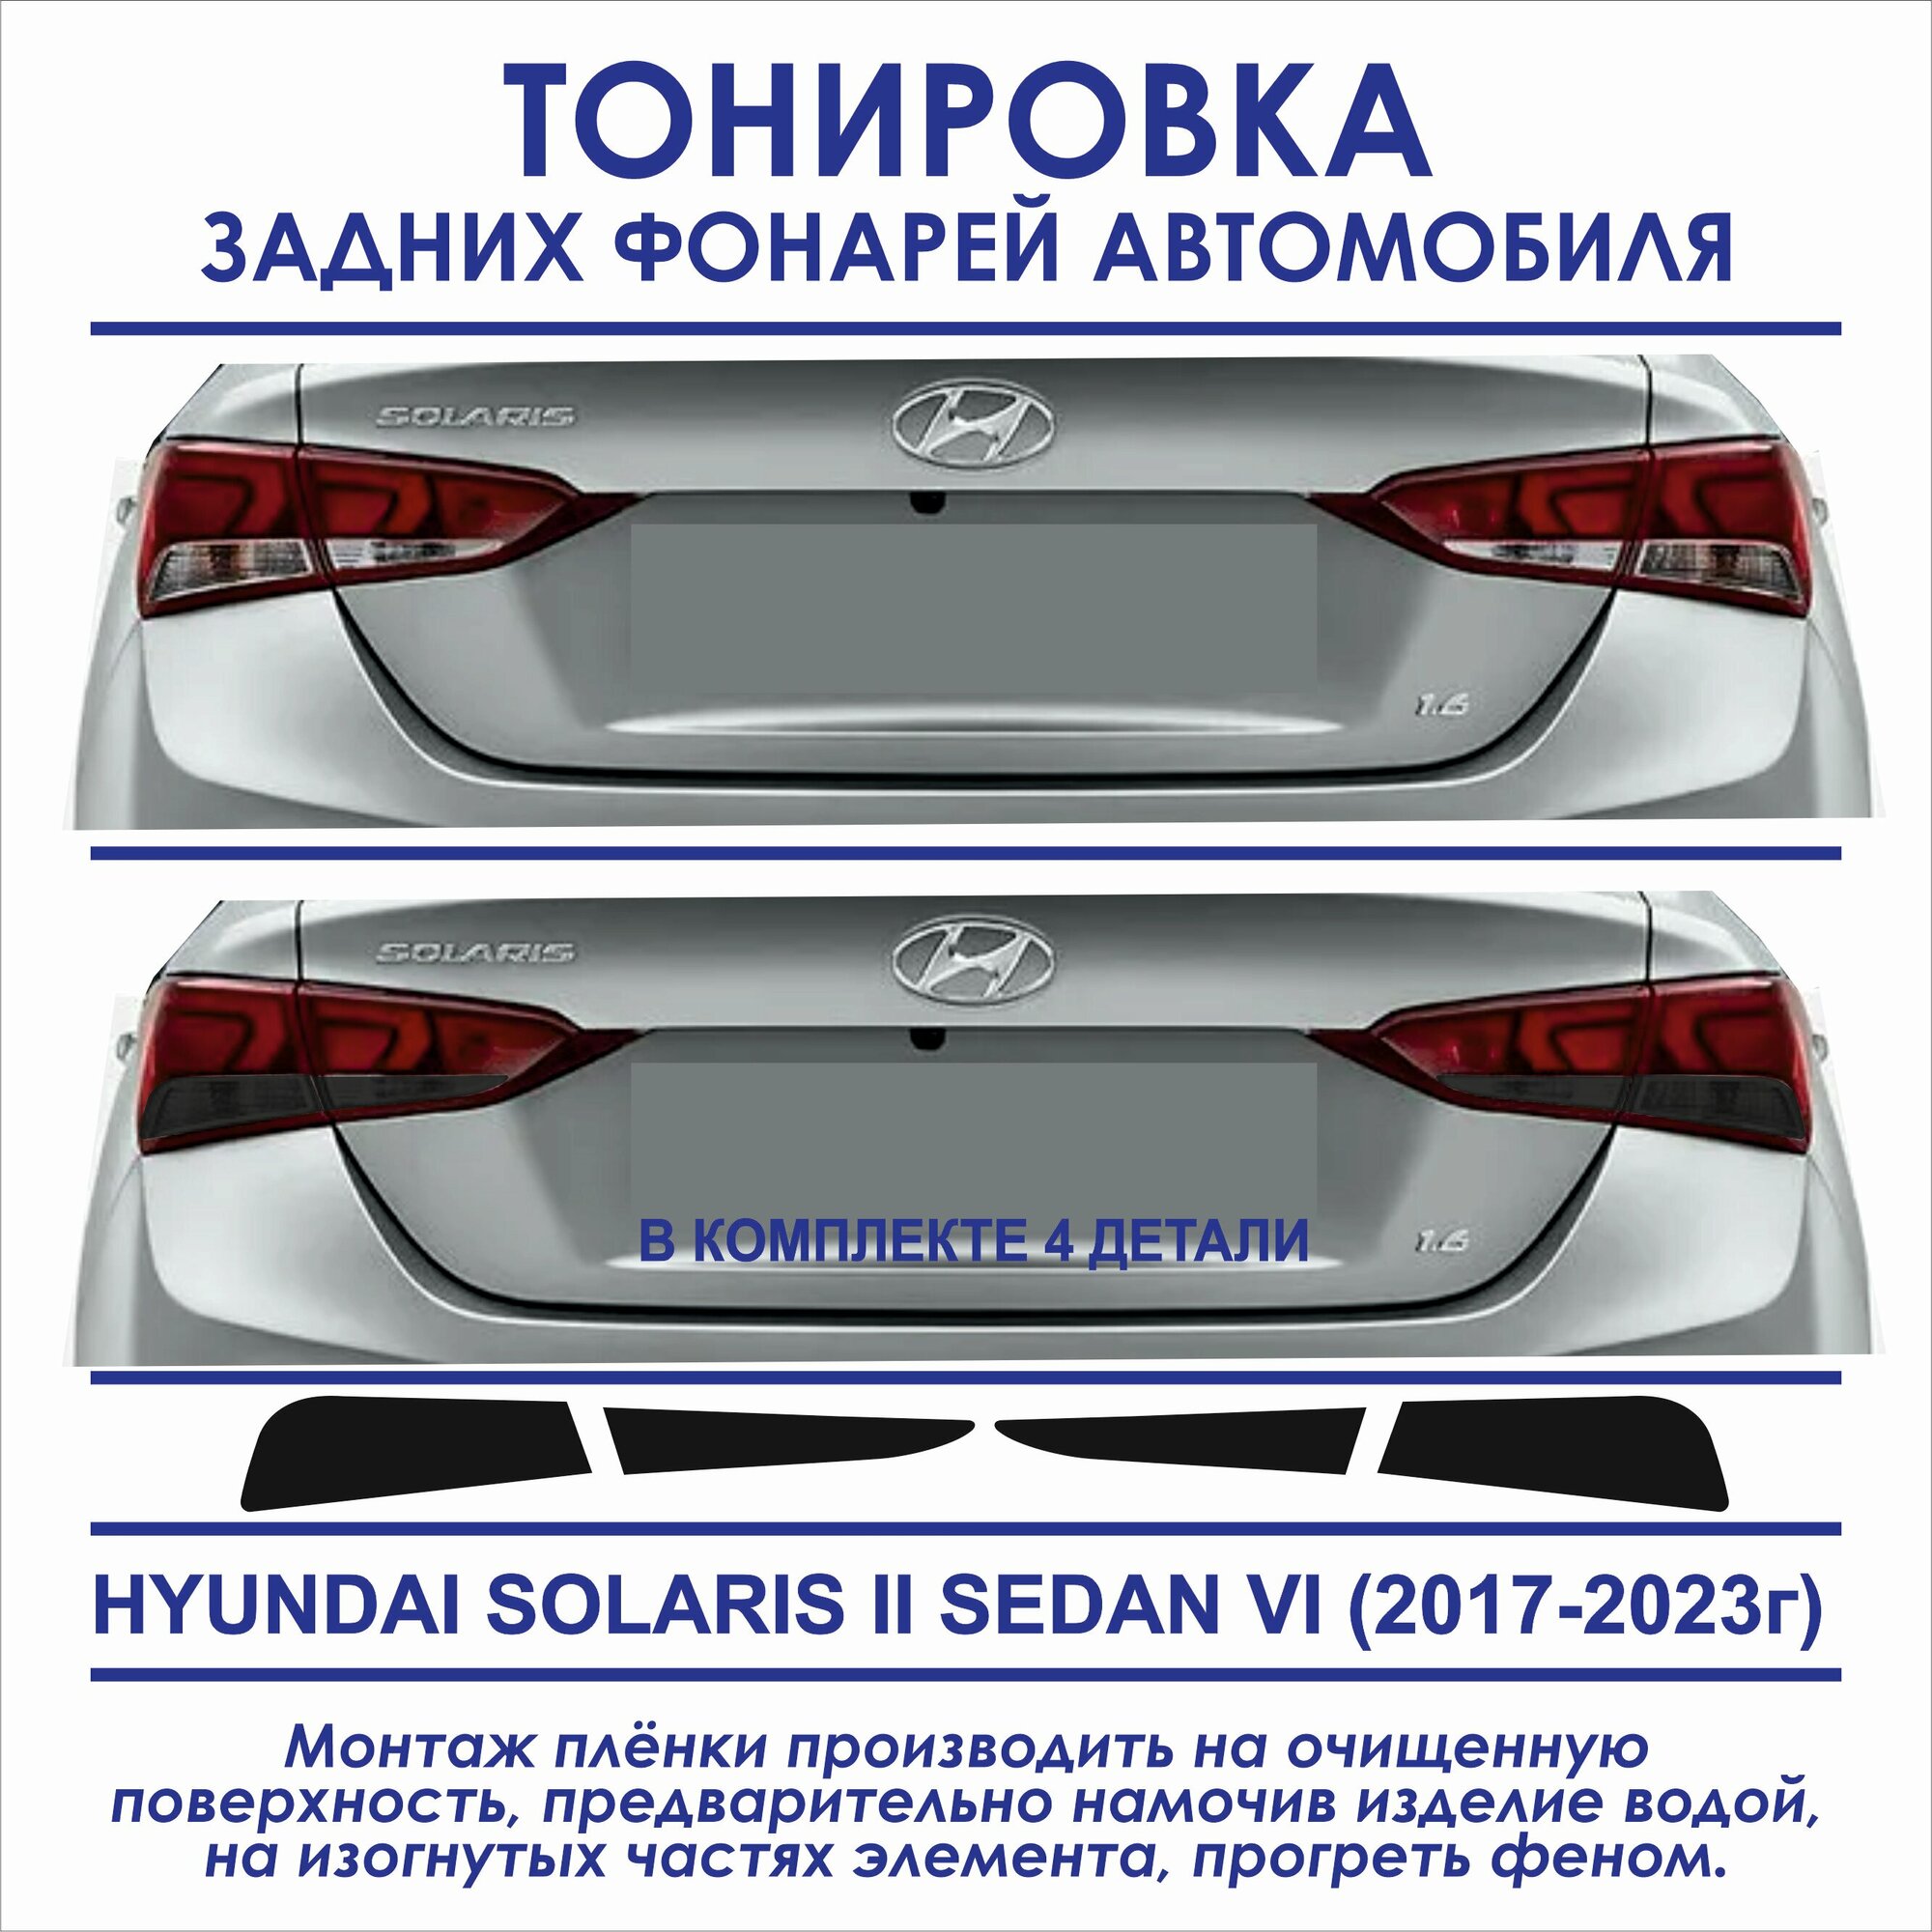 Пленка тонировочная задних фонарей Hyundai Solarys II седан VI (2017-2023г) в комплекте 4 детали